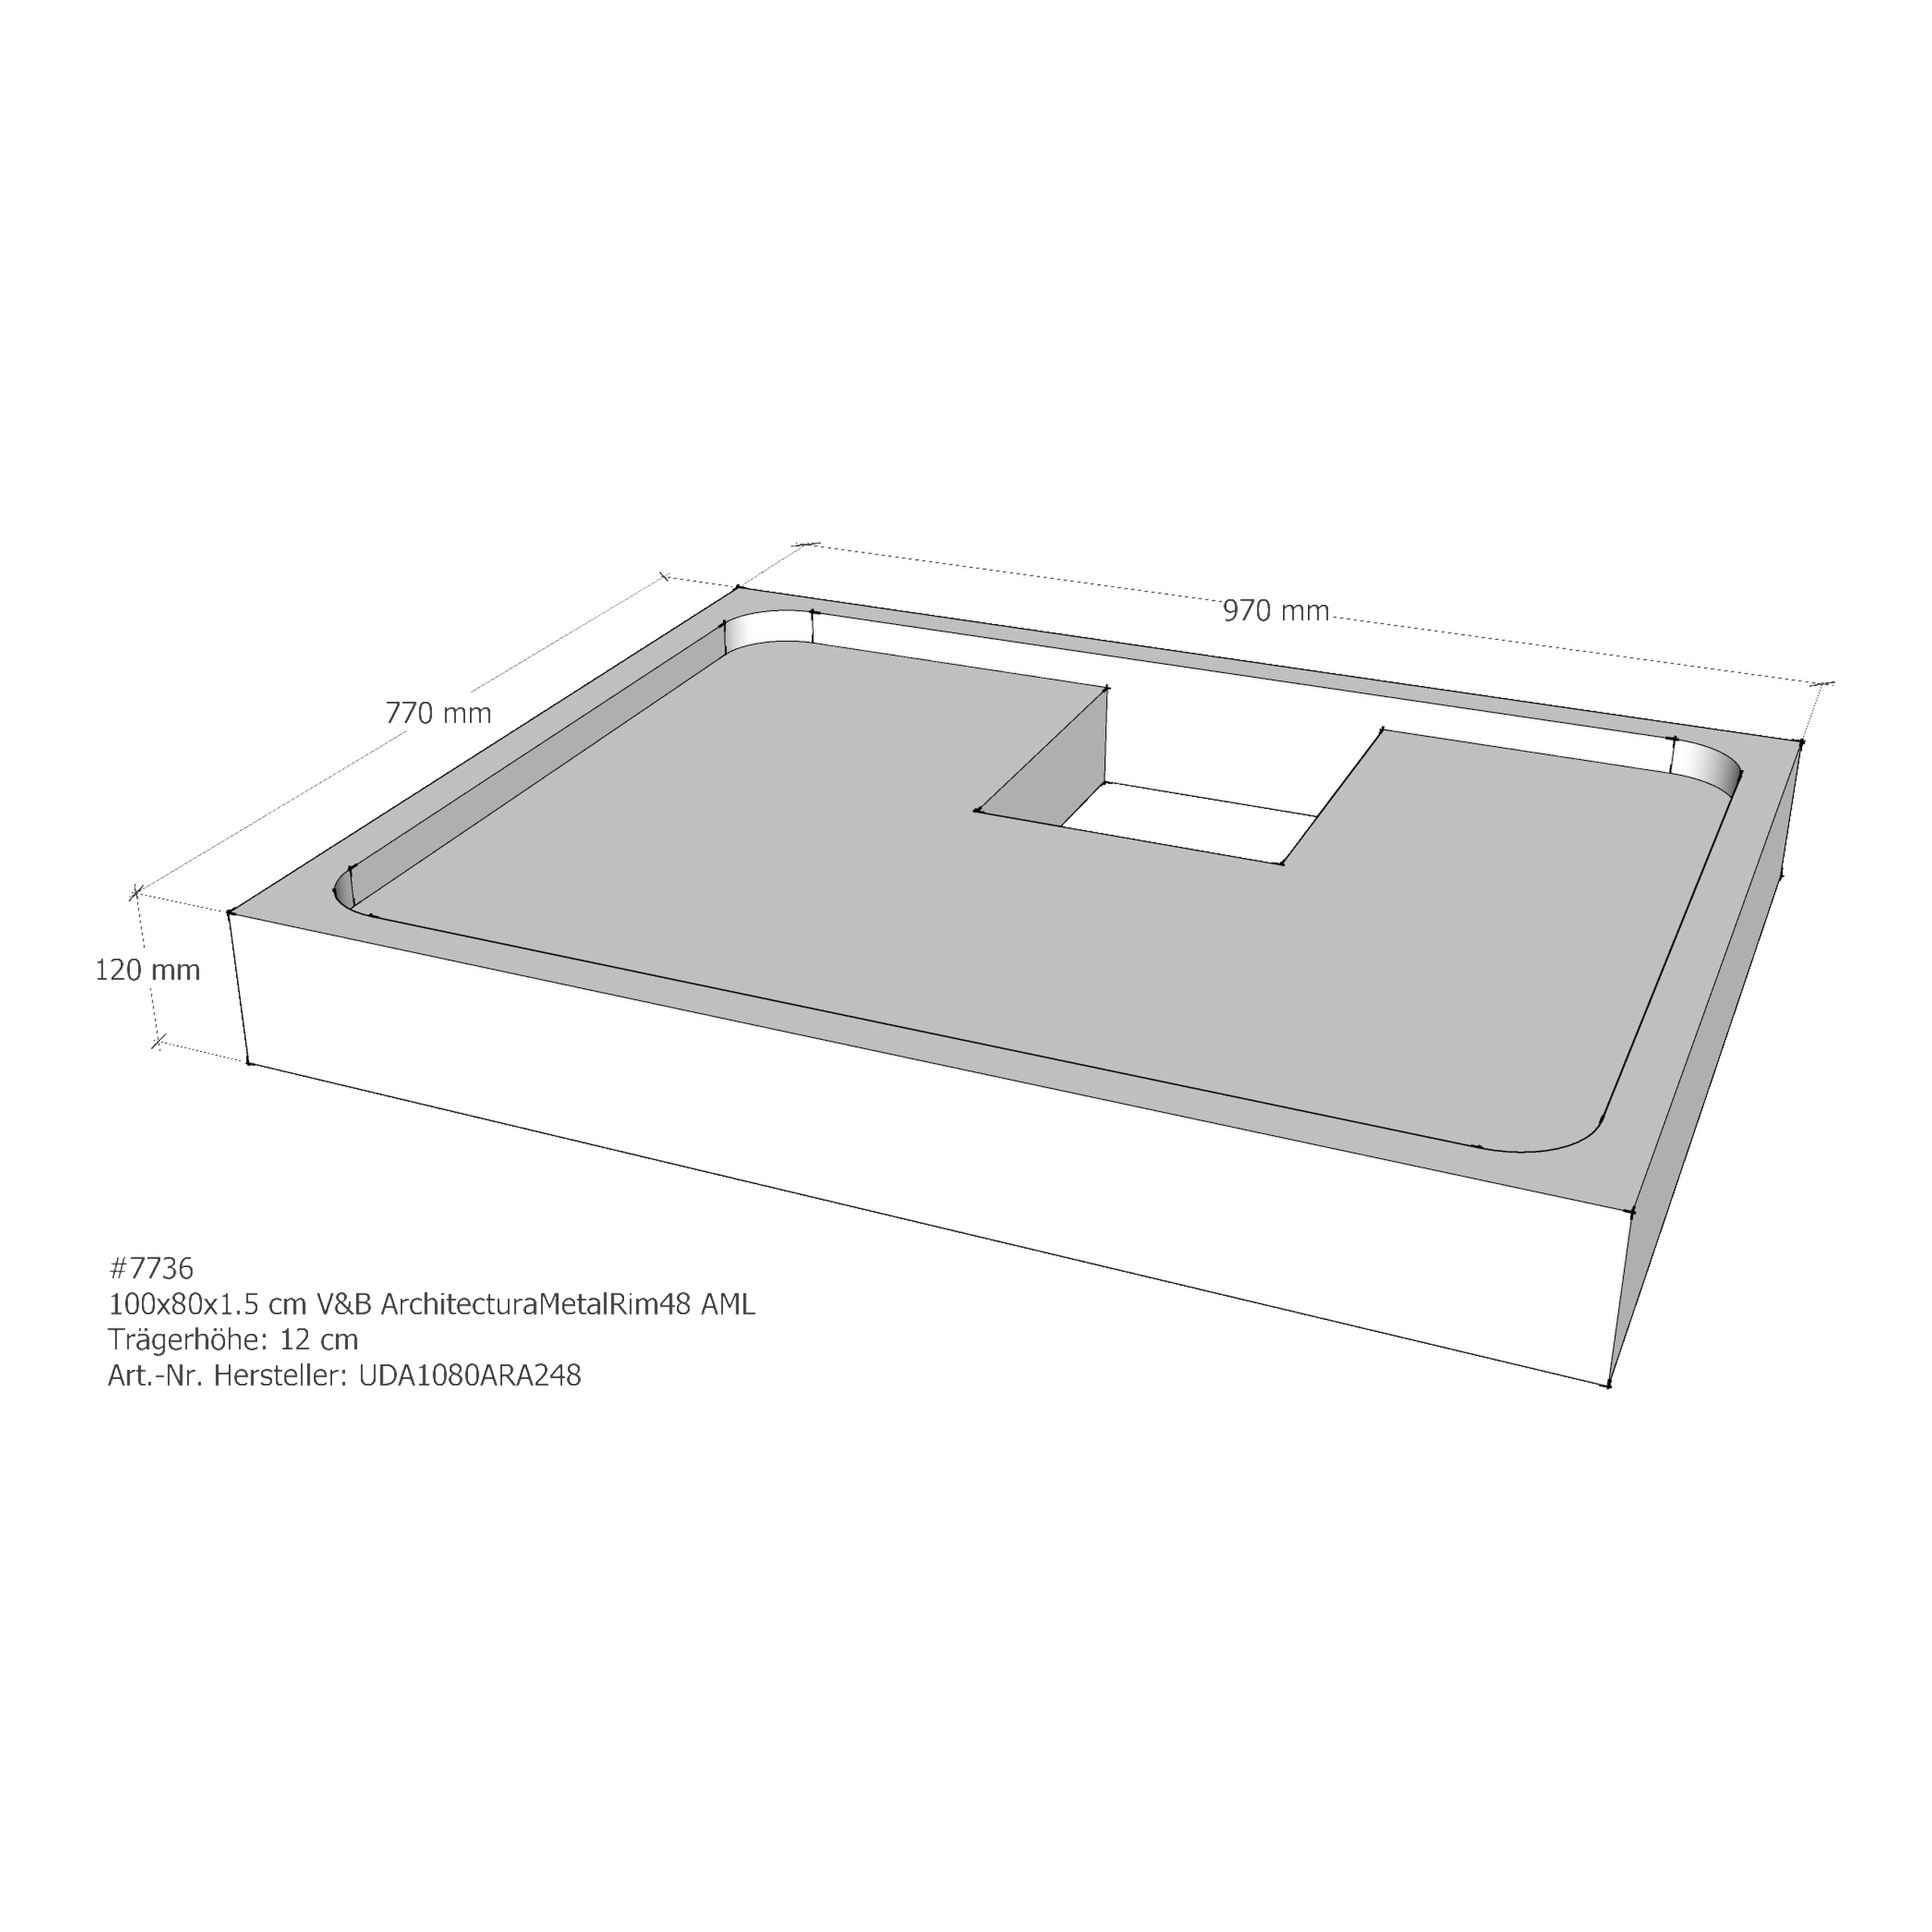 Duschwannenträger für Villeroy & Boch Architectura MetalRim 100 × 80 × 1,5 cm